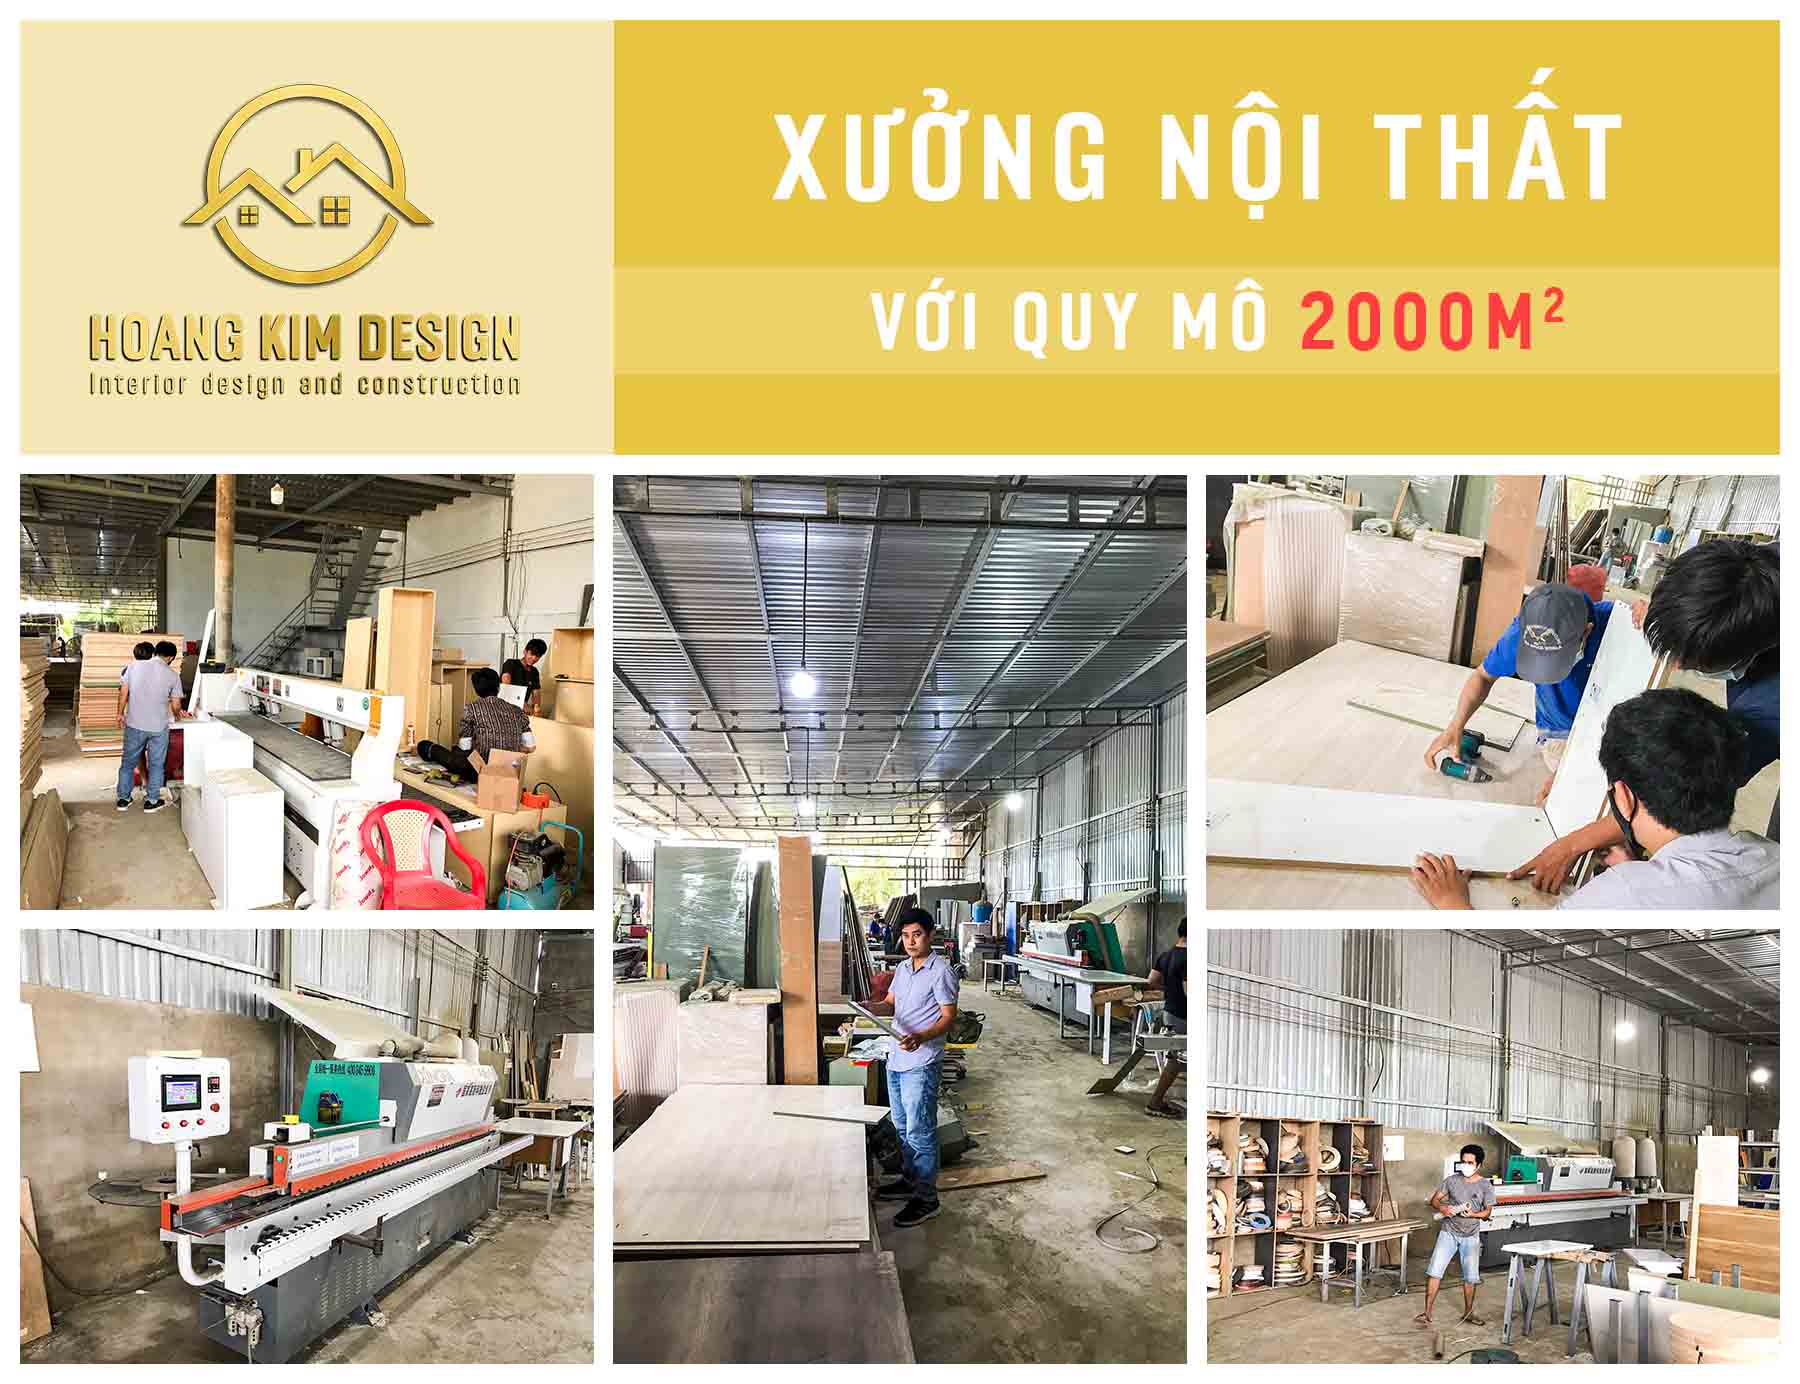 Xưởng sản xuất nội thất rộng 2000m2 của Hoàng Kim Design